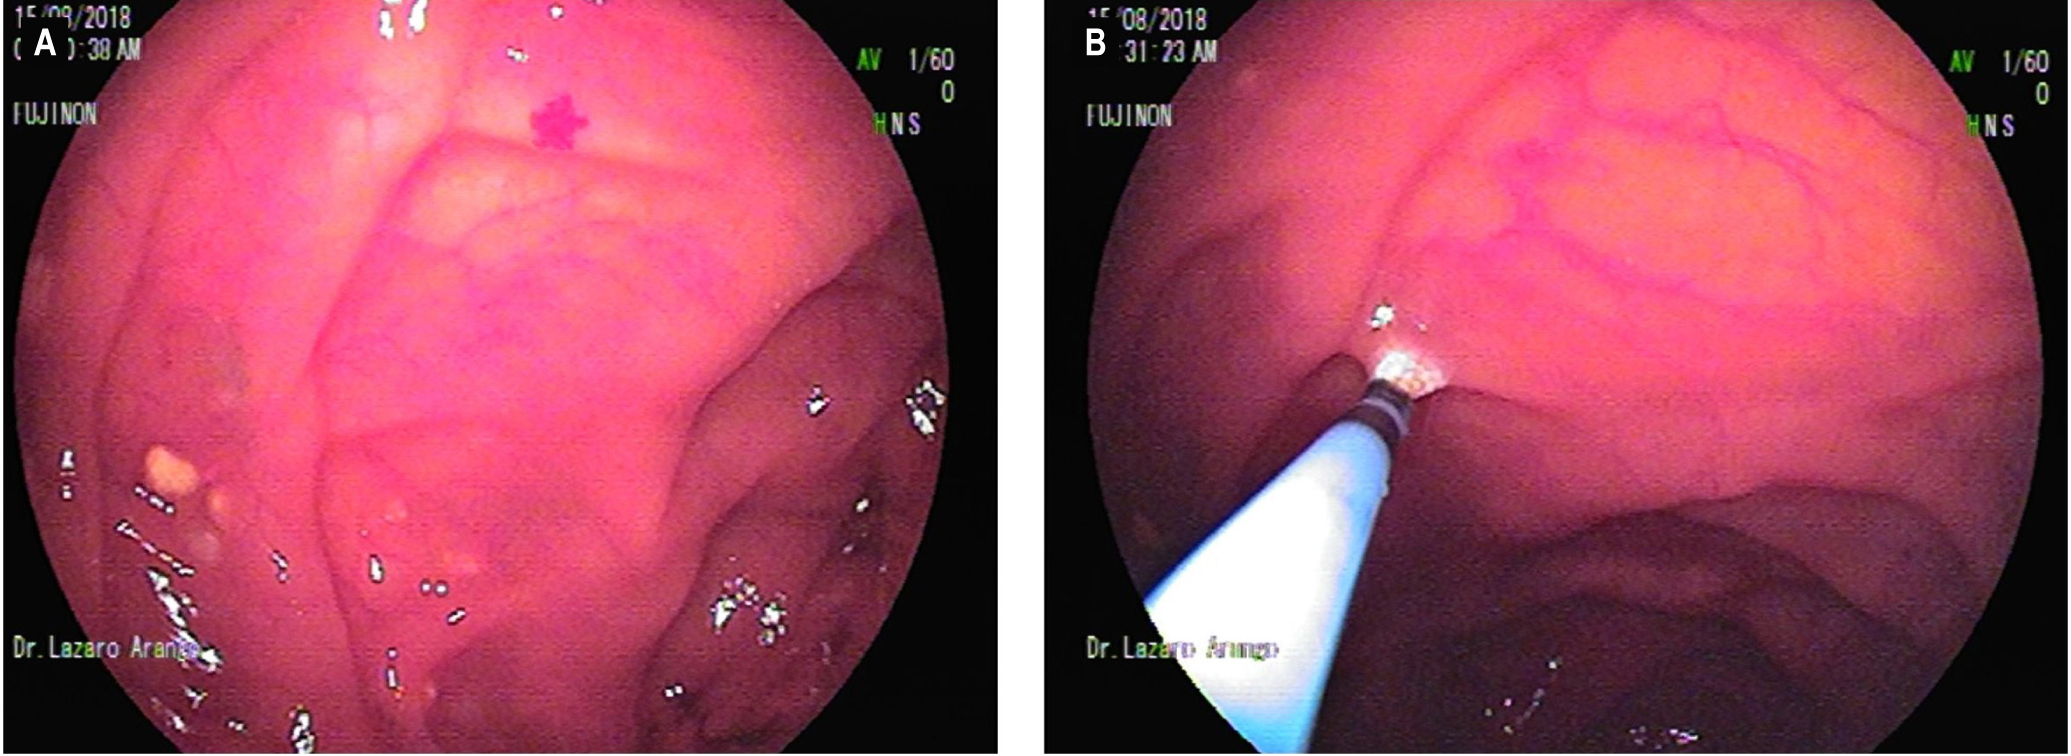 Figura 3. A. Lesiones lipomatosas del yeyuno y una angiodisplasia al lado. B. Terapia con argón plasma de la lesión lipomatosa ulcerada y de la angiodisplasia. Imágenes tomadas por el Dr. Lázaro Arango.